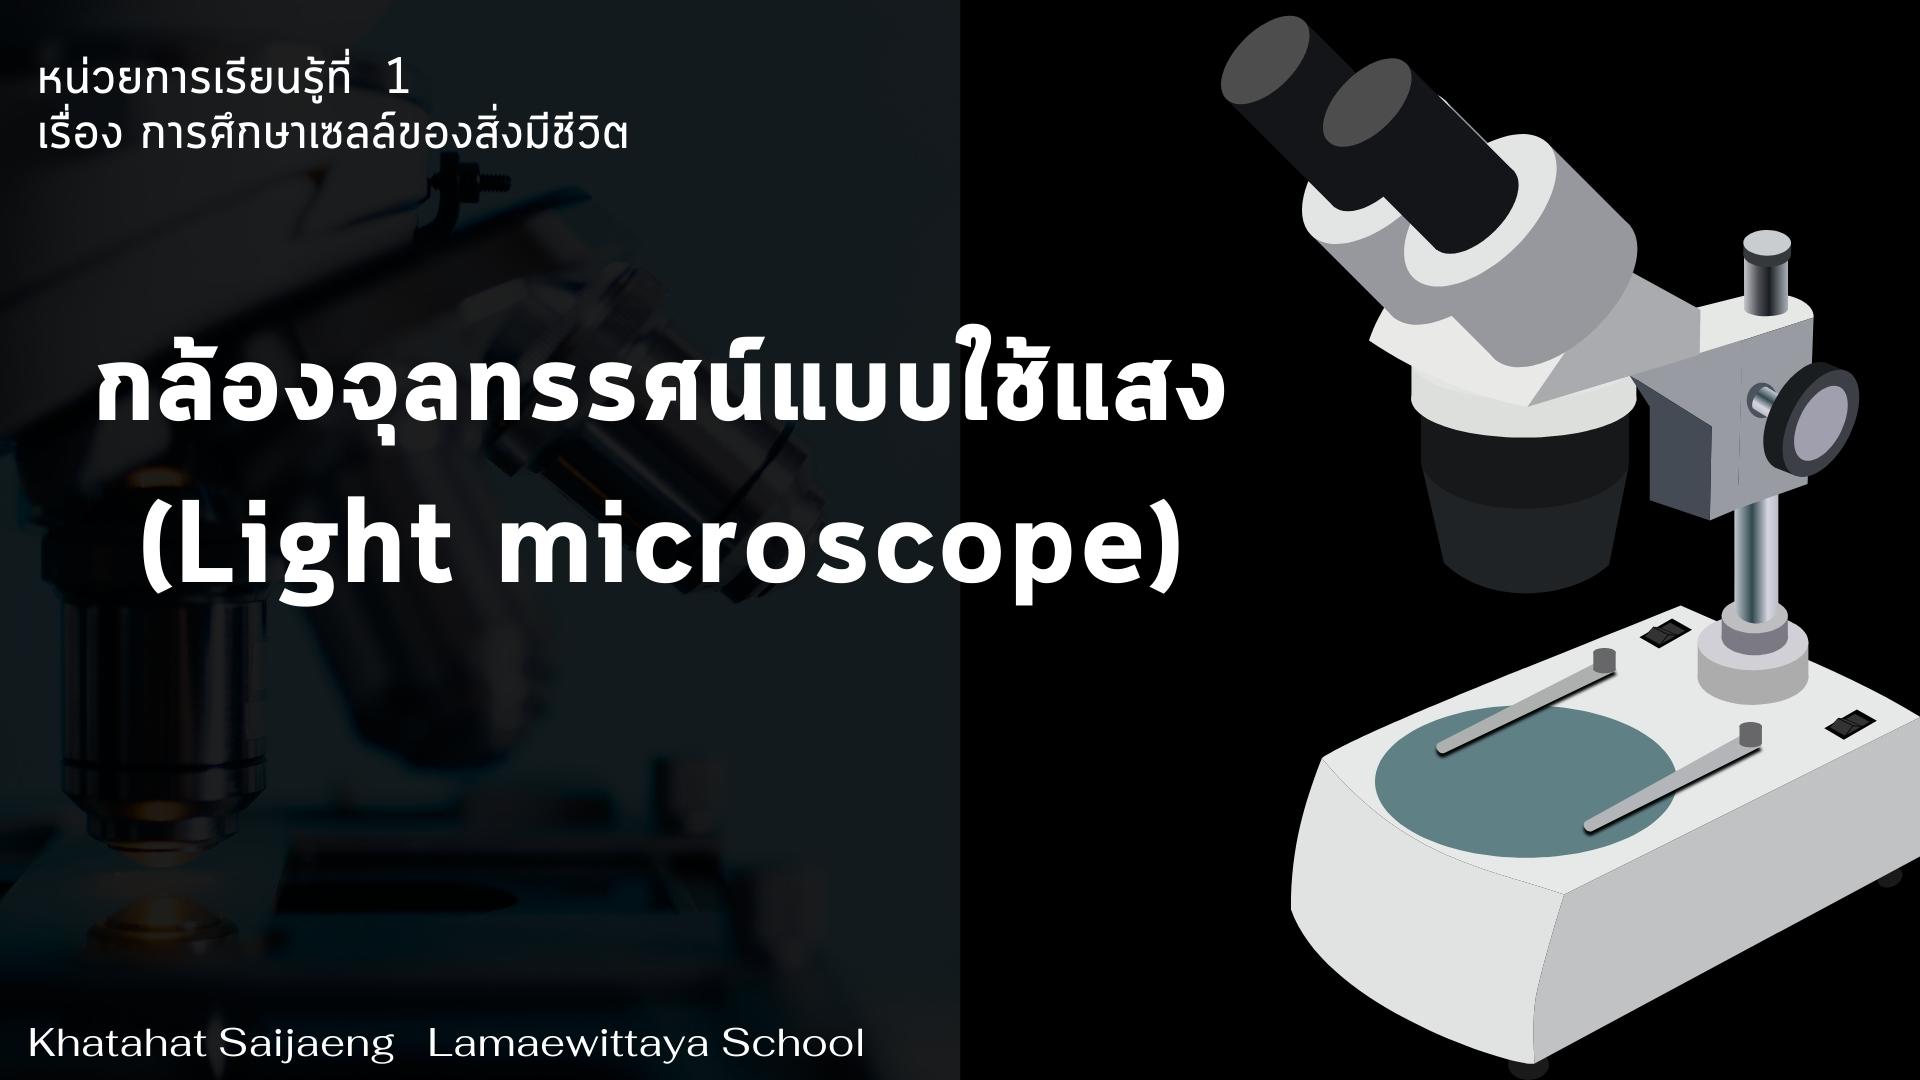 ภาพประกอบไอเดีย กล้องจุลทรรศน์ออนไลน์ Virtual microscope